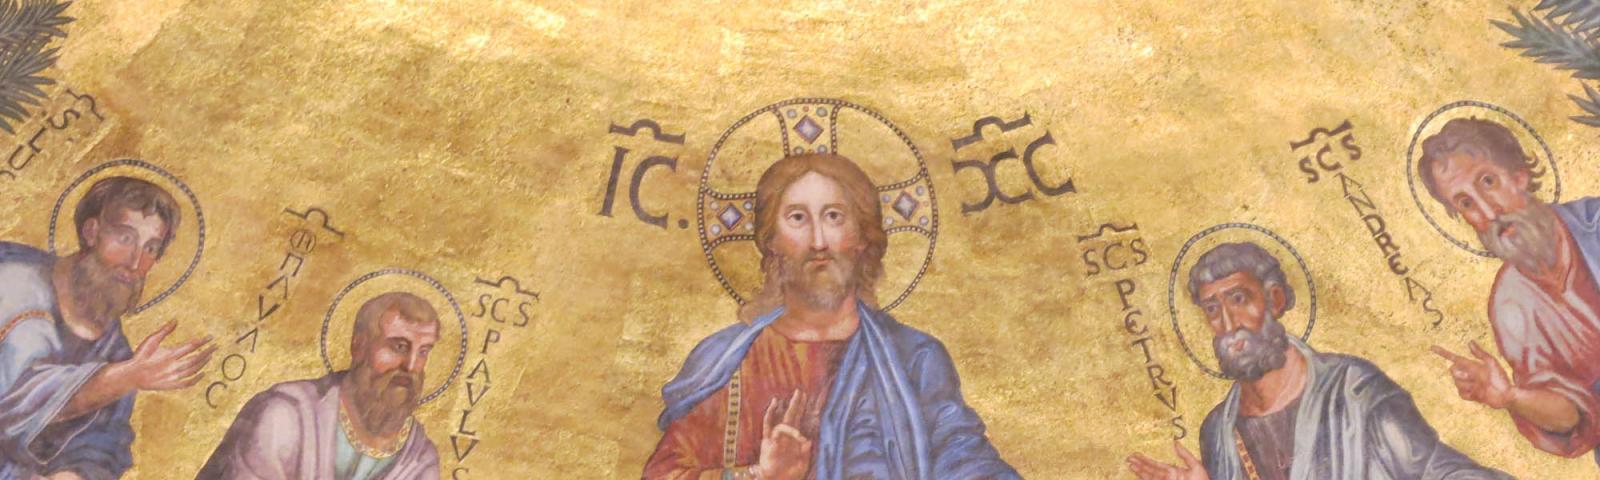 Fresco mit Christus auf dem Thron